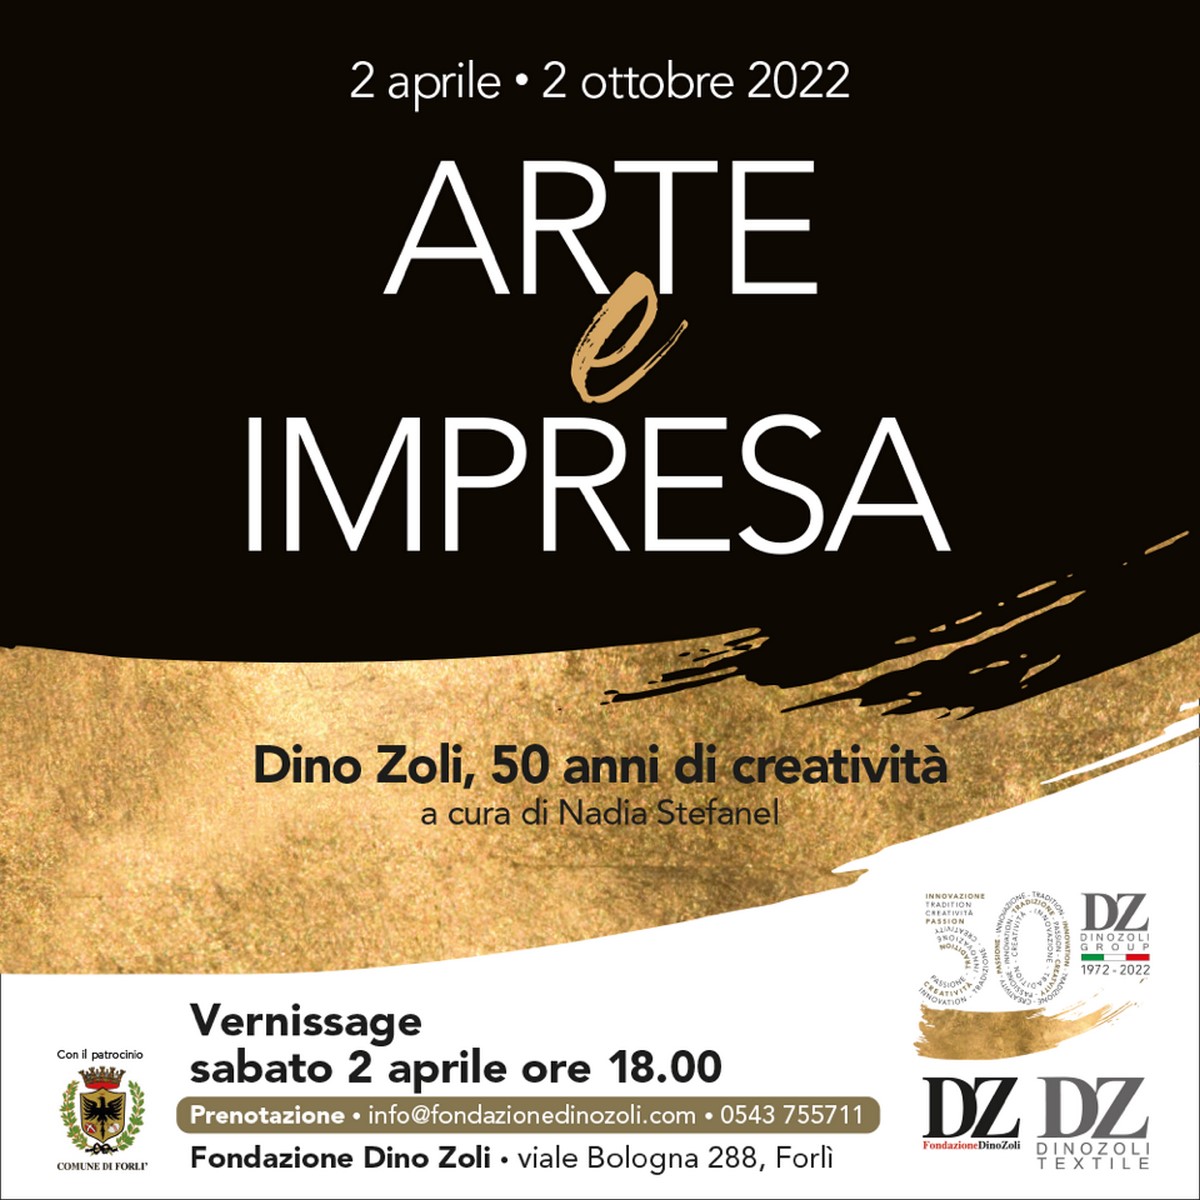 ARTE E IMPRESA - Dino Zoli, 50 anni di creatività